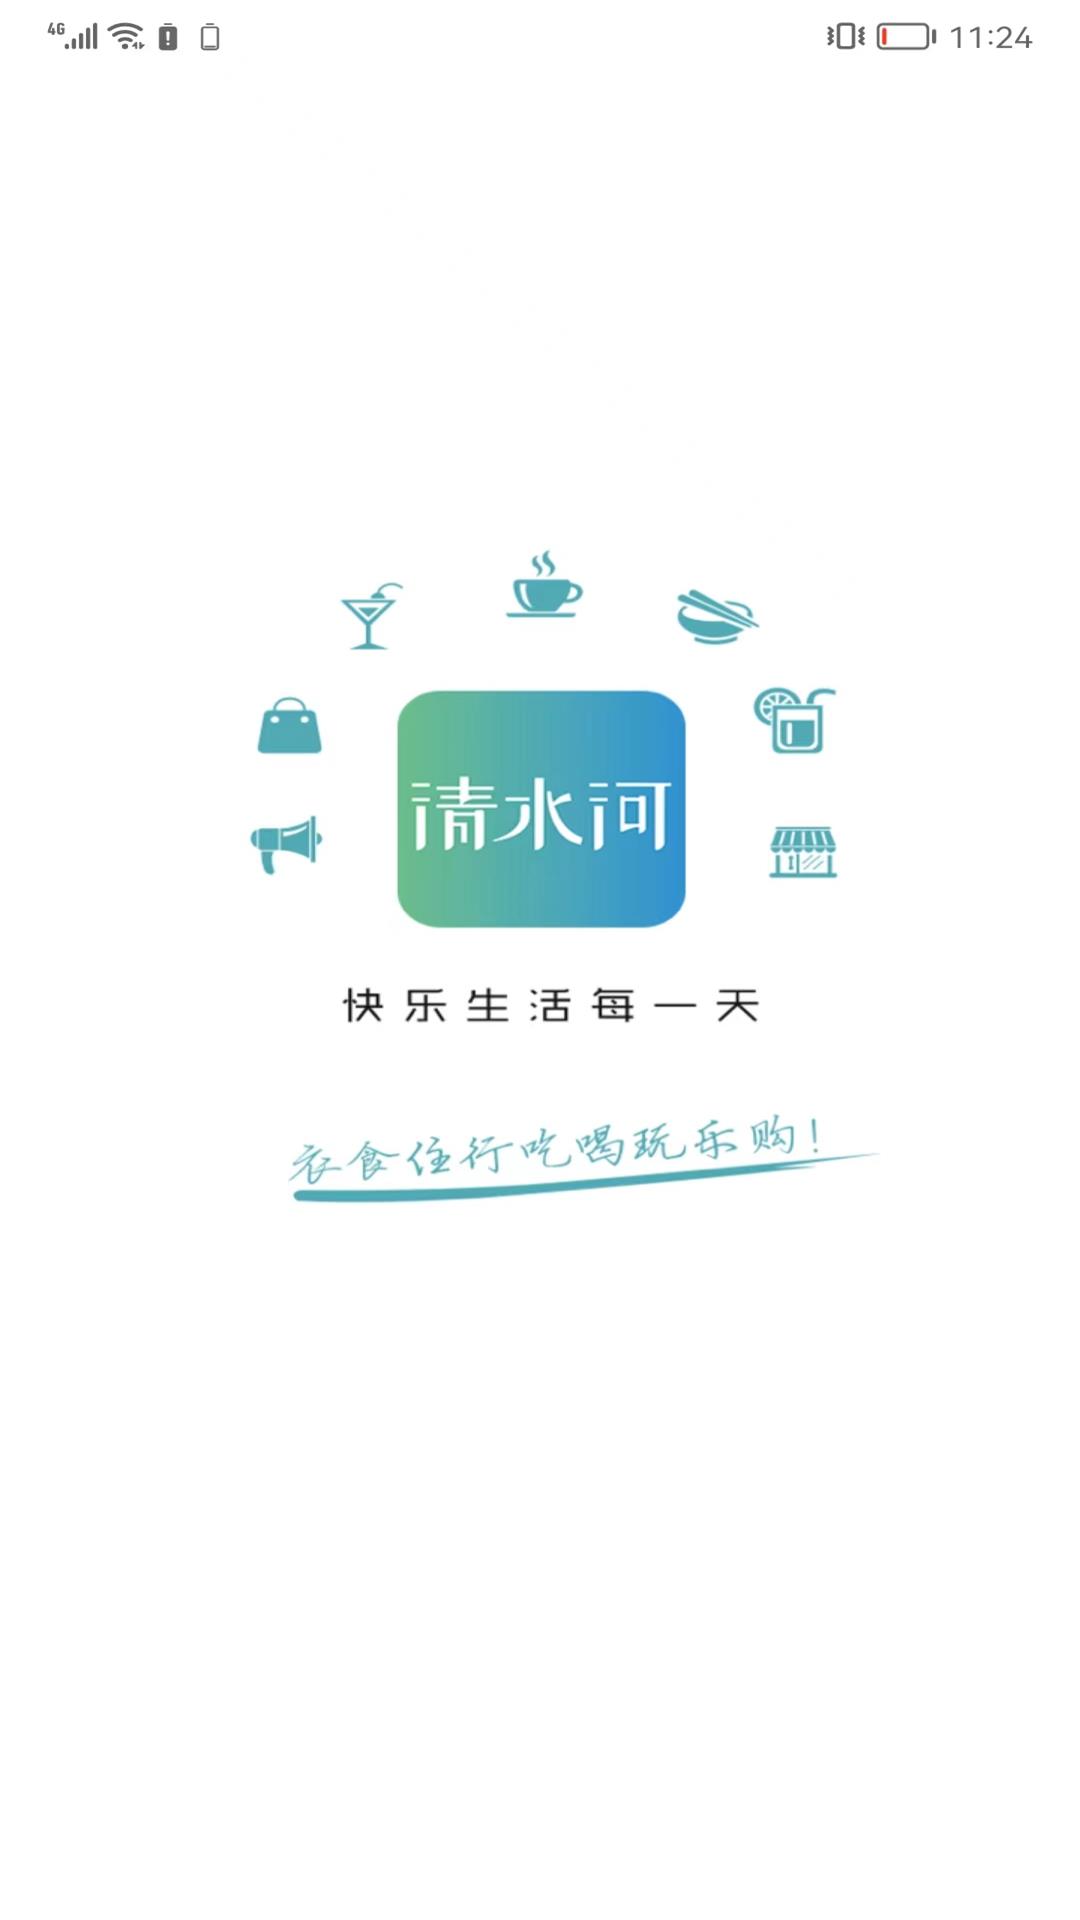 乐享清水河同城服务APP官方版v10.0.8截图